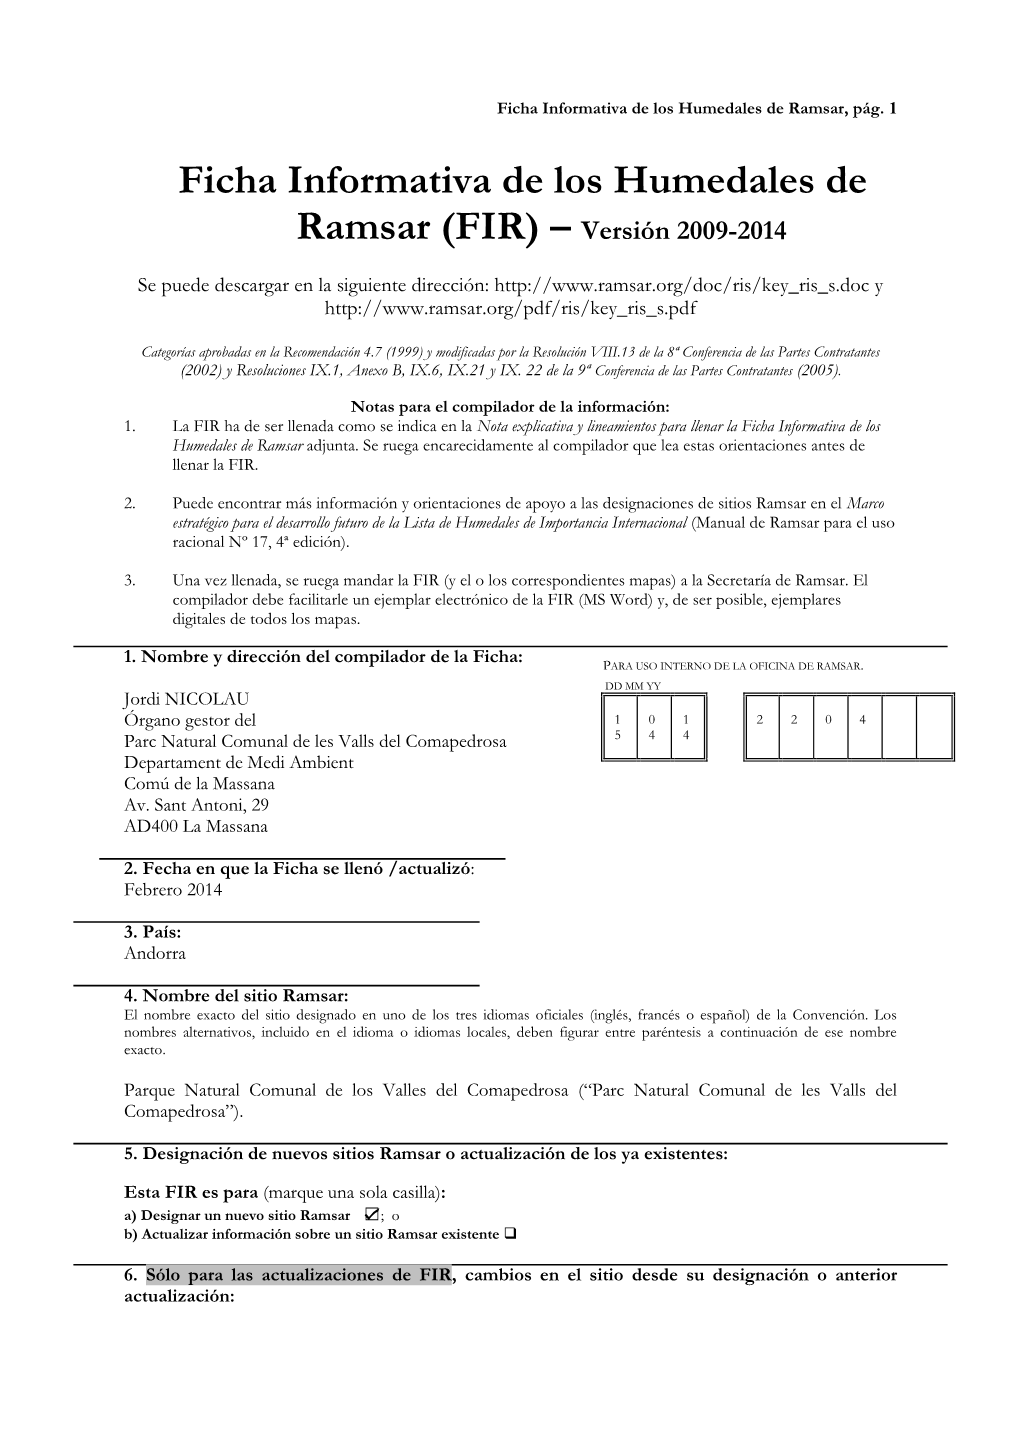 Ficha Informativa De Los Humedales De Ramsar (FIR) – Versión 2009-2014